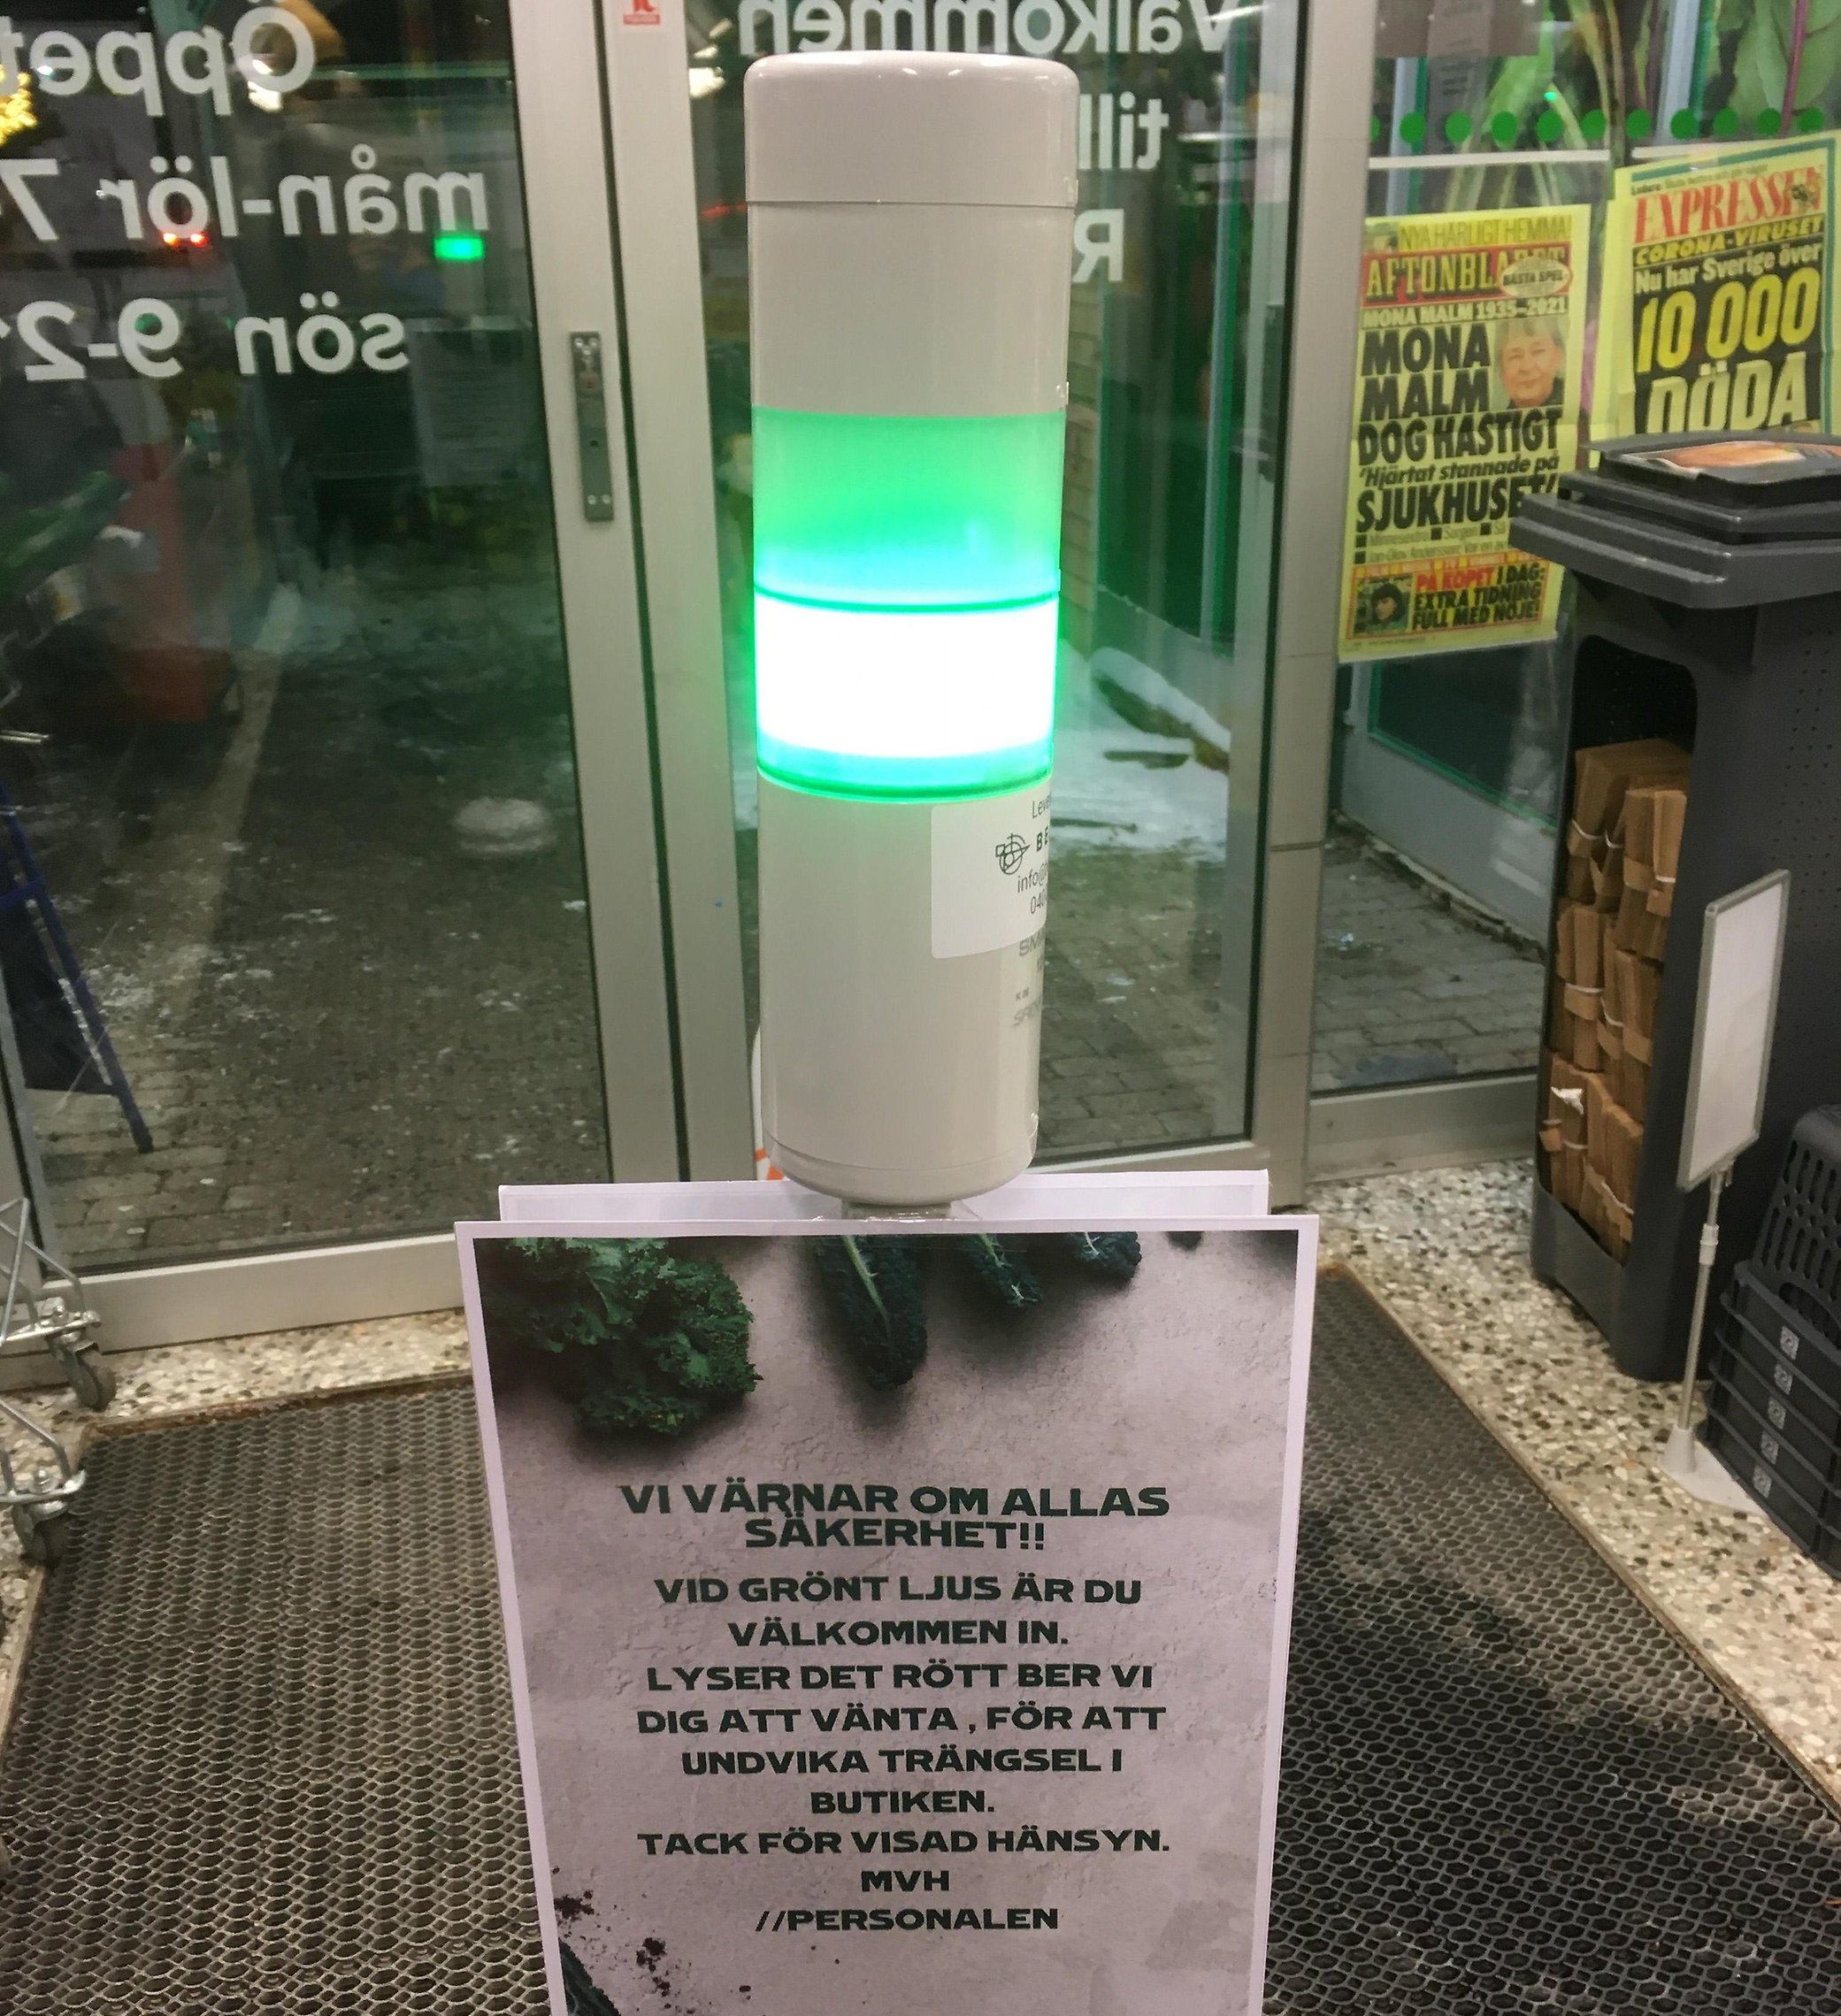 Fotografi på en grönt lysande lampa i ingången till en mataffär. En lapp
 sitter under, där det står "vi värnar om allas säkerhet! vid grönt ljus
 är du välkommen in. Lyser det rött ber vi dig att vänta, för att 
undvika trängsel i butiken. Tackför visad hänsyn. Mvh personalen".